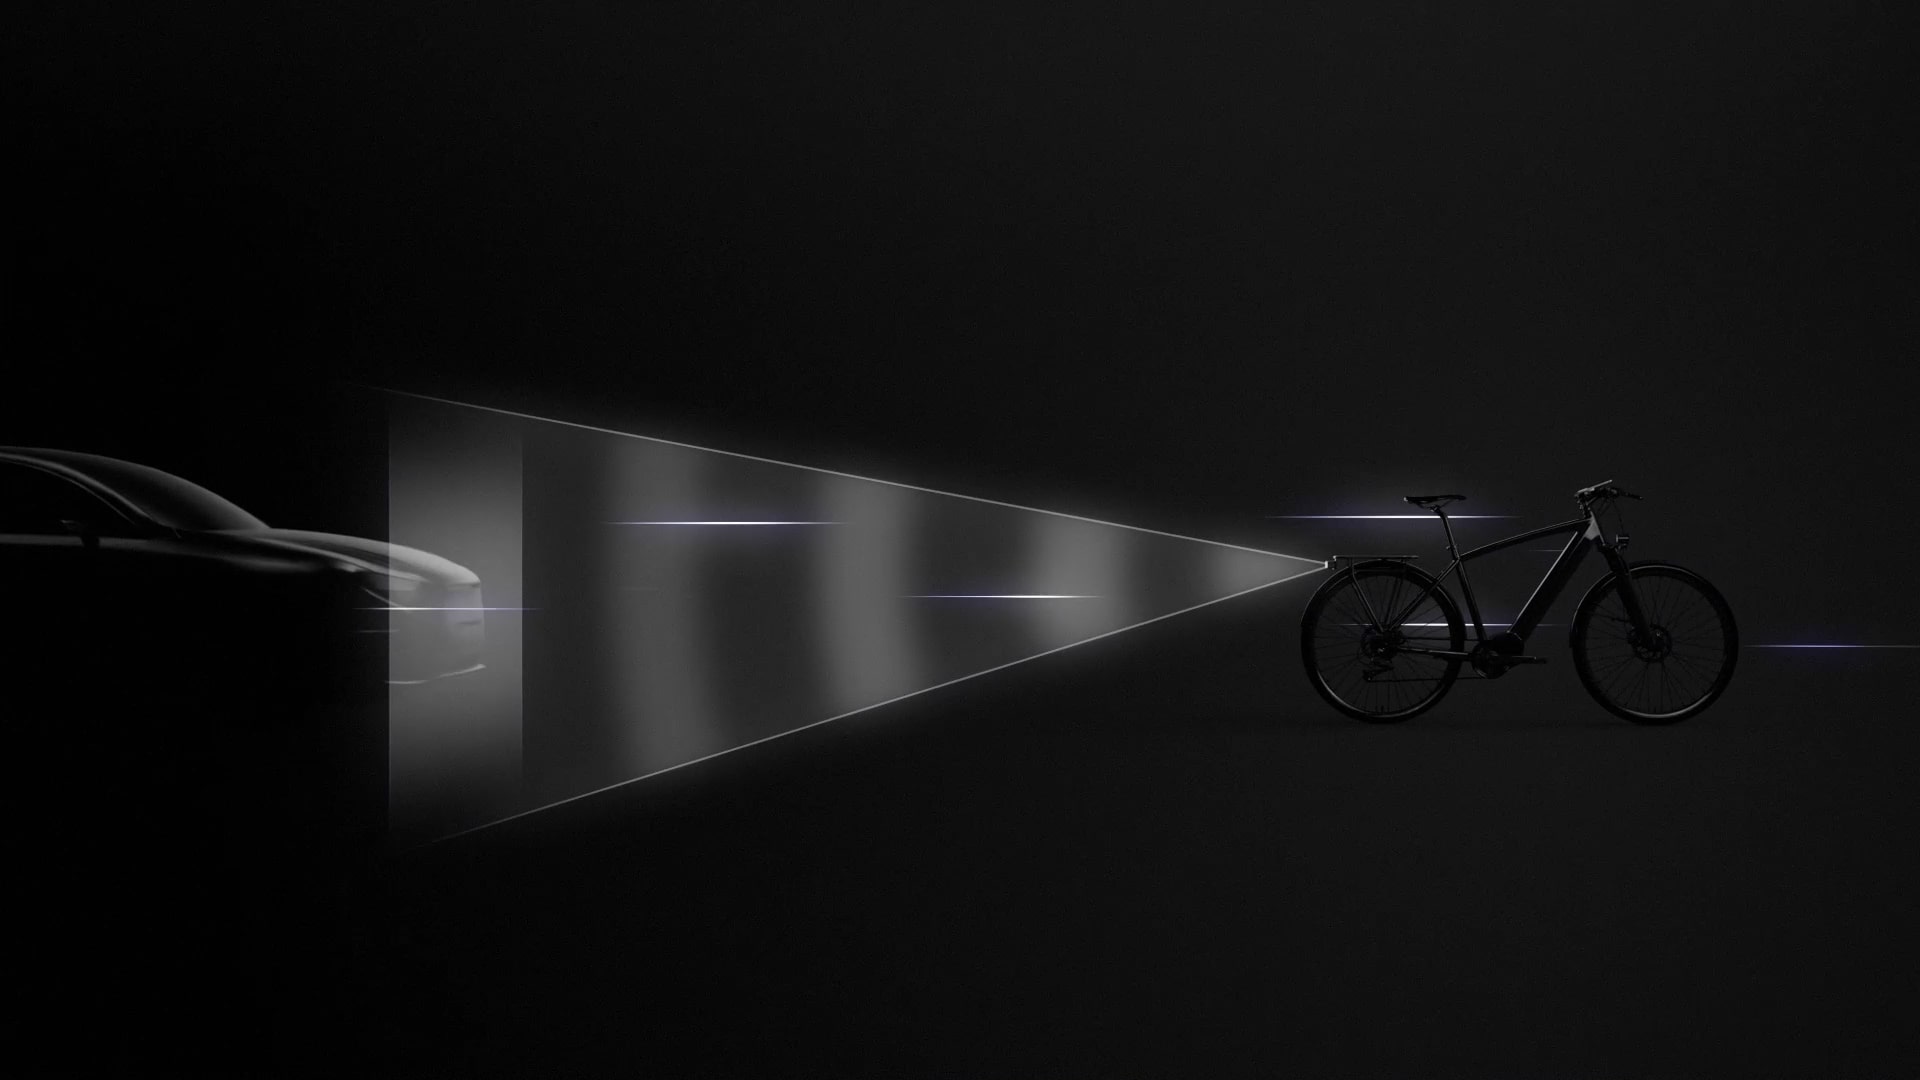 Digitale fietsachteruitkijkspiegel Ride Safety System RS 1000: kunstmatige intelligentie (AI) voor gevaardetectie: waarschuwing voor de fietser